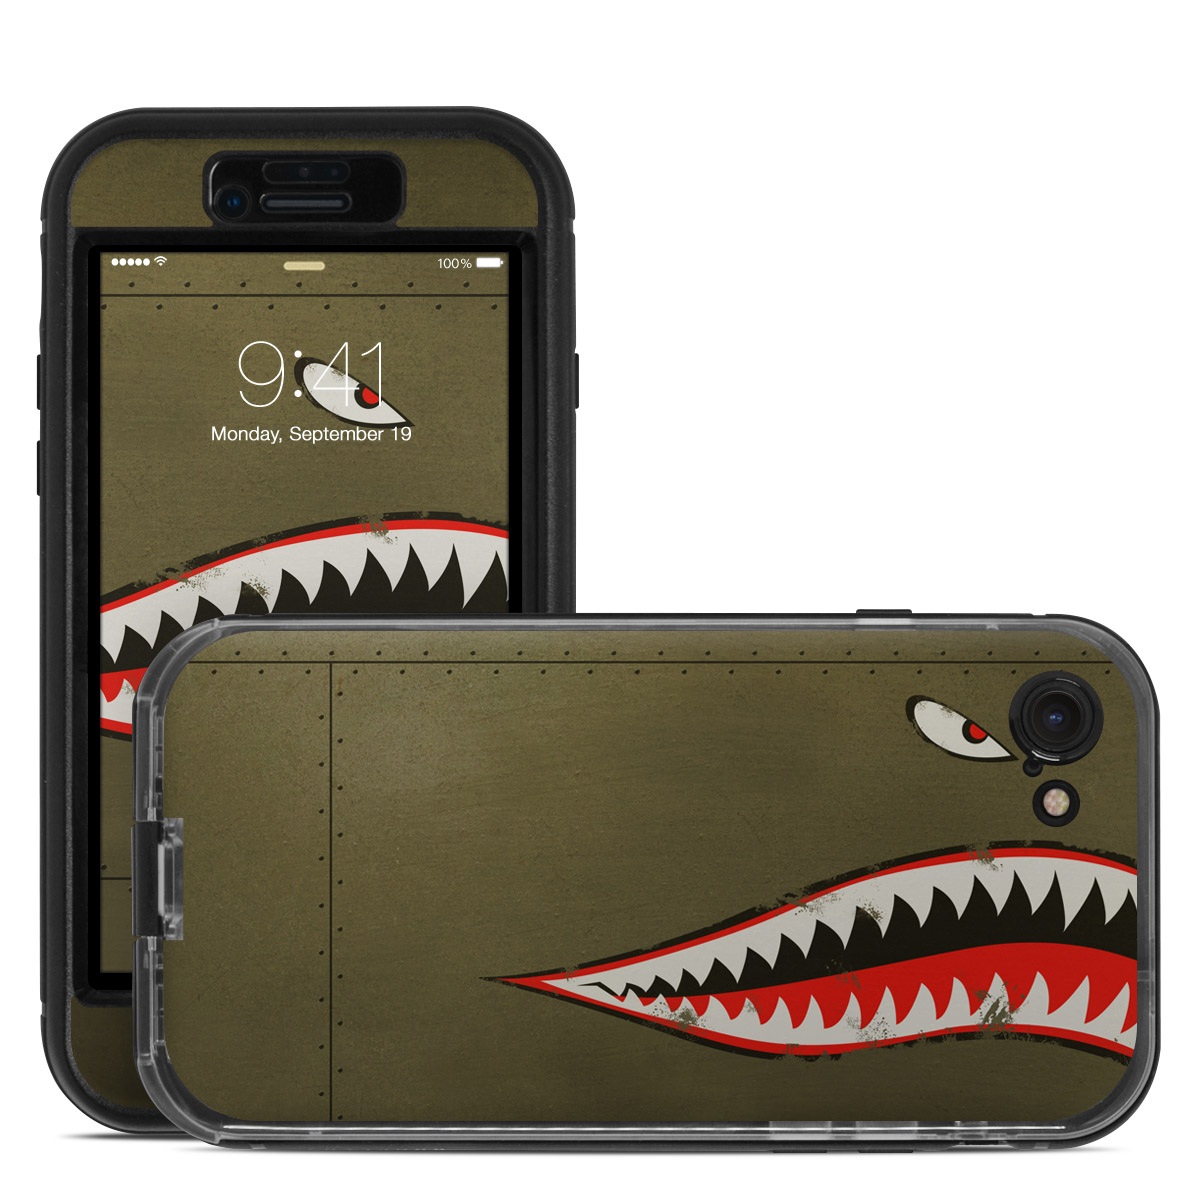 Lifeproof iPhone 7 Nuud Case Skin - USAF Shark (Image 1)